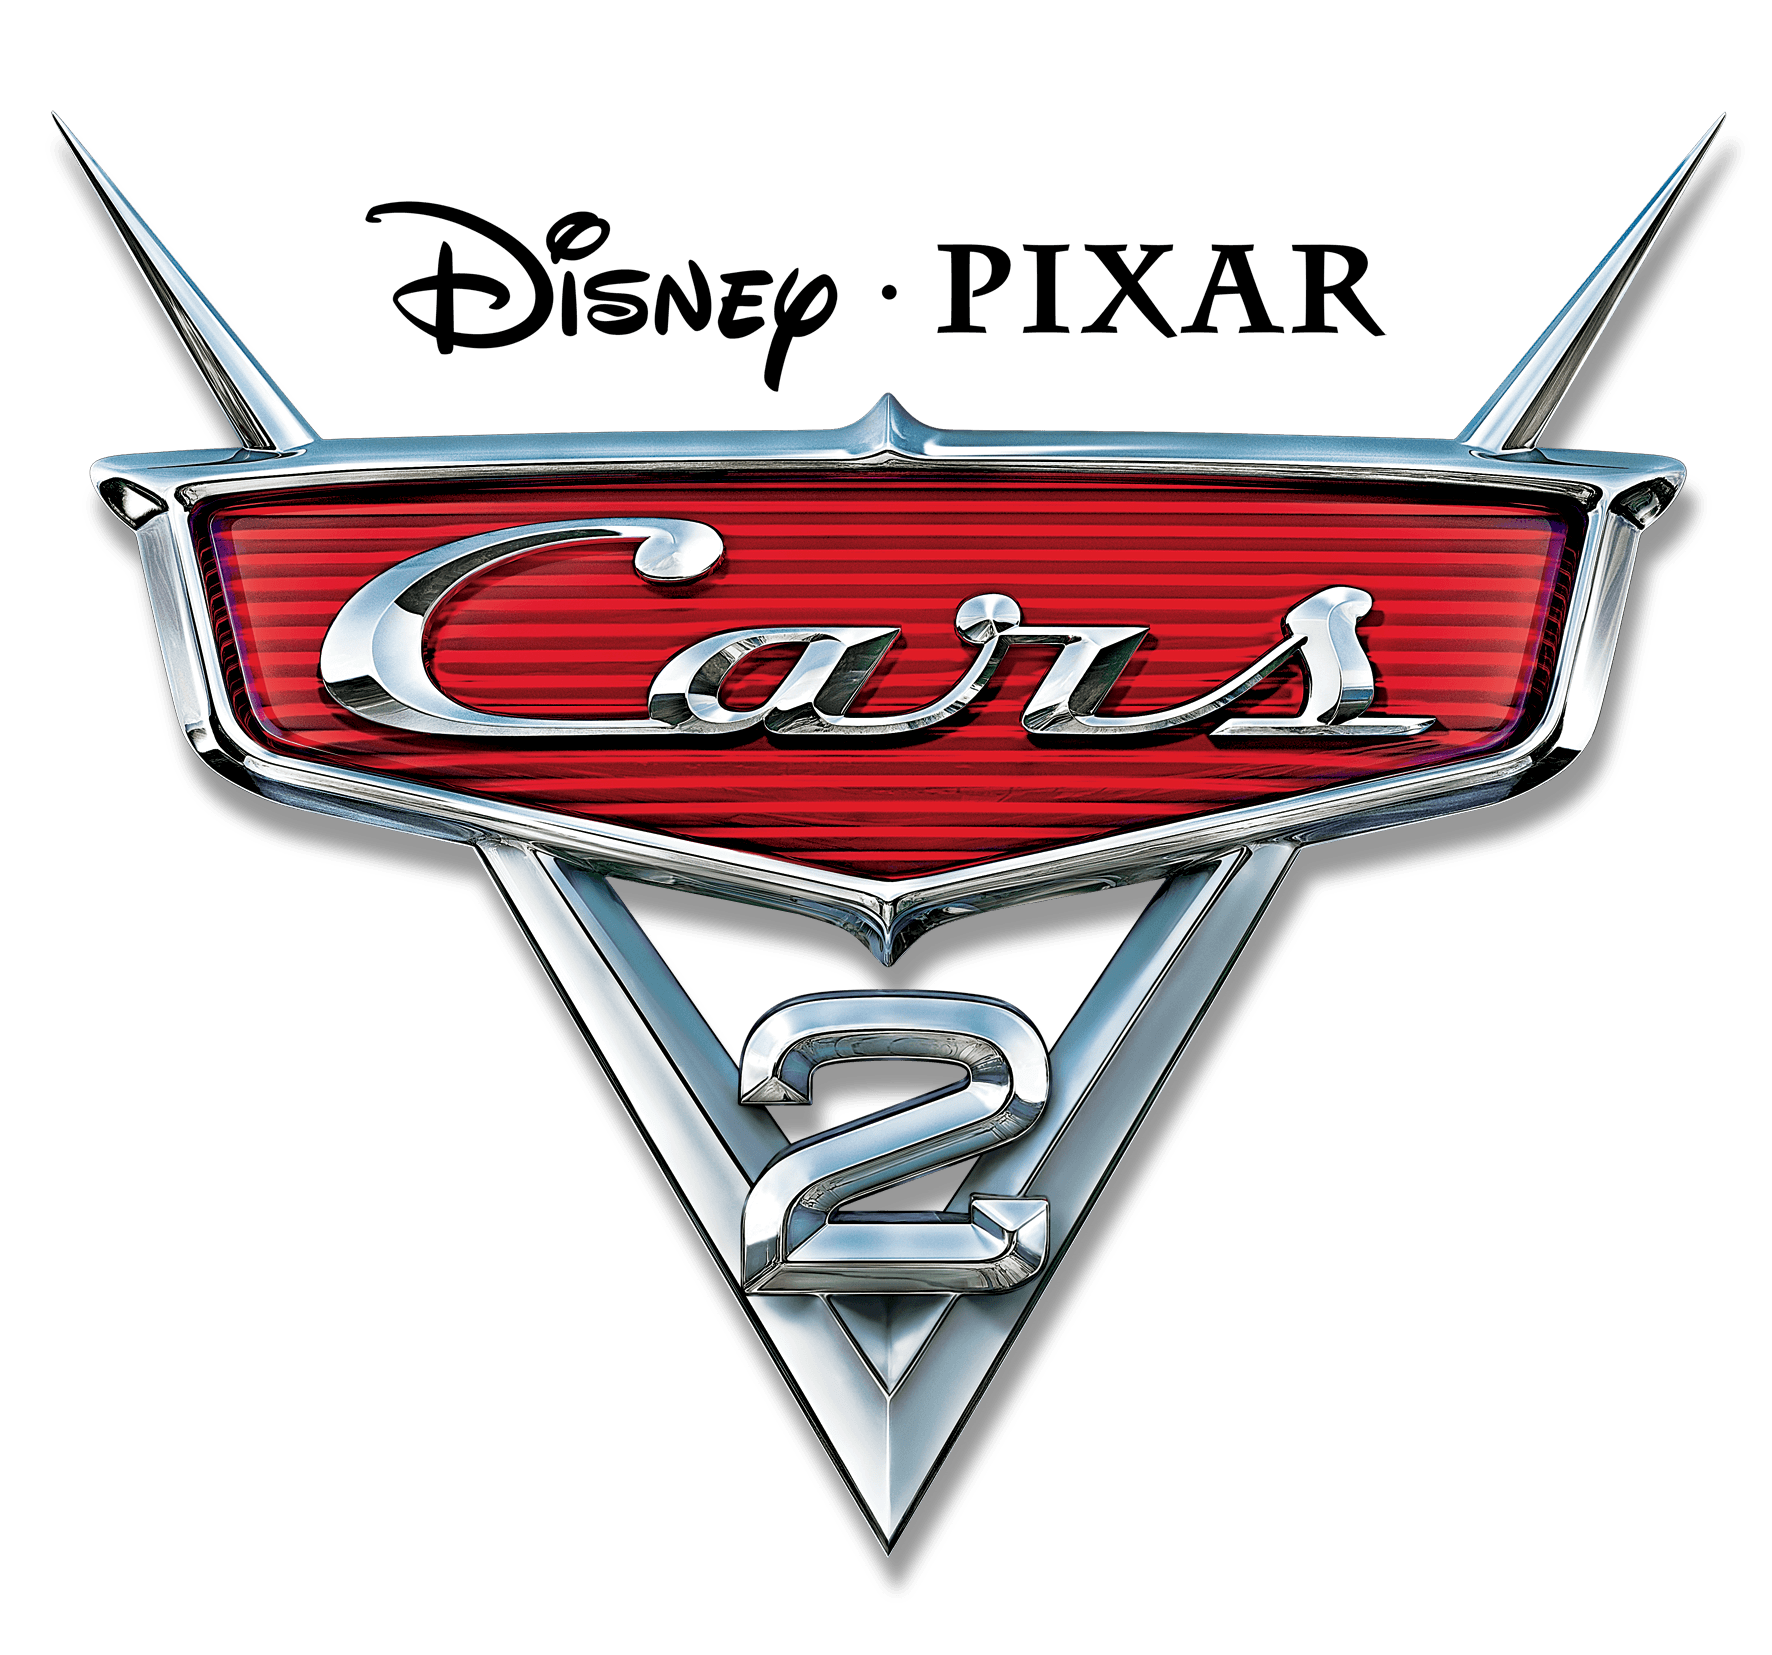 Cars 2 Movie Logo - Cars 2 | Planes Wiki | FANDOM powered by Wikia